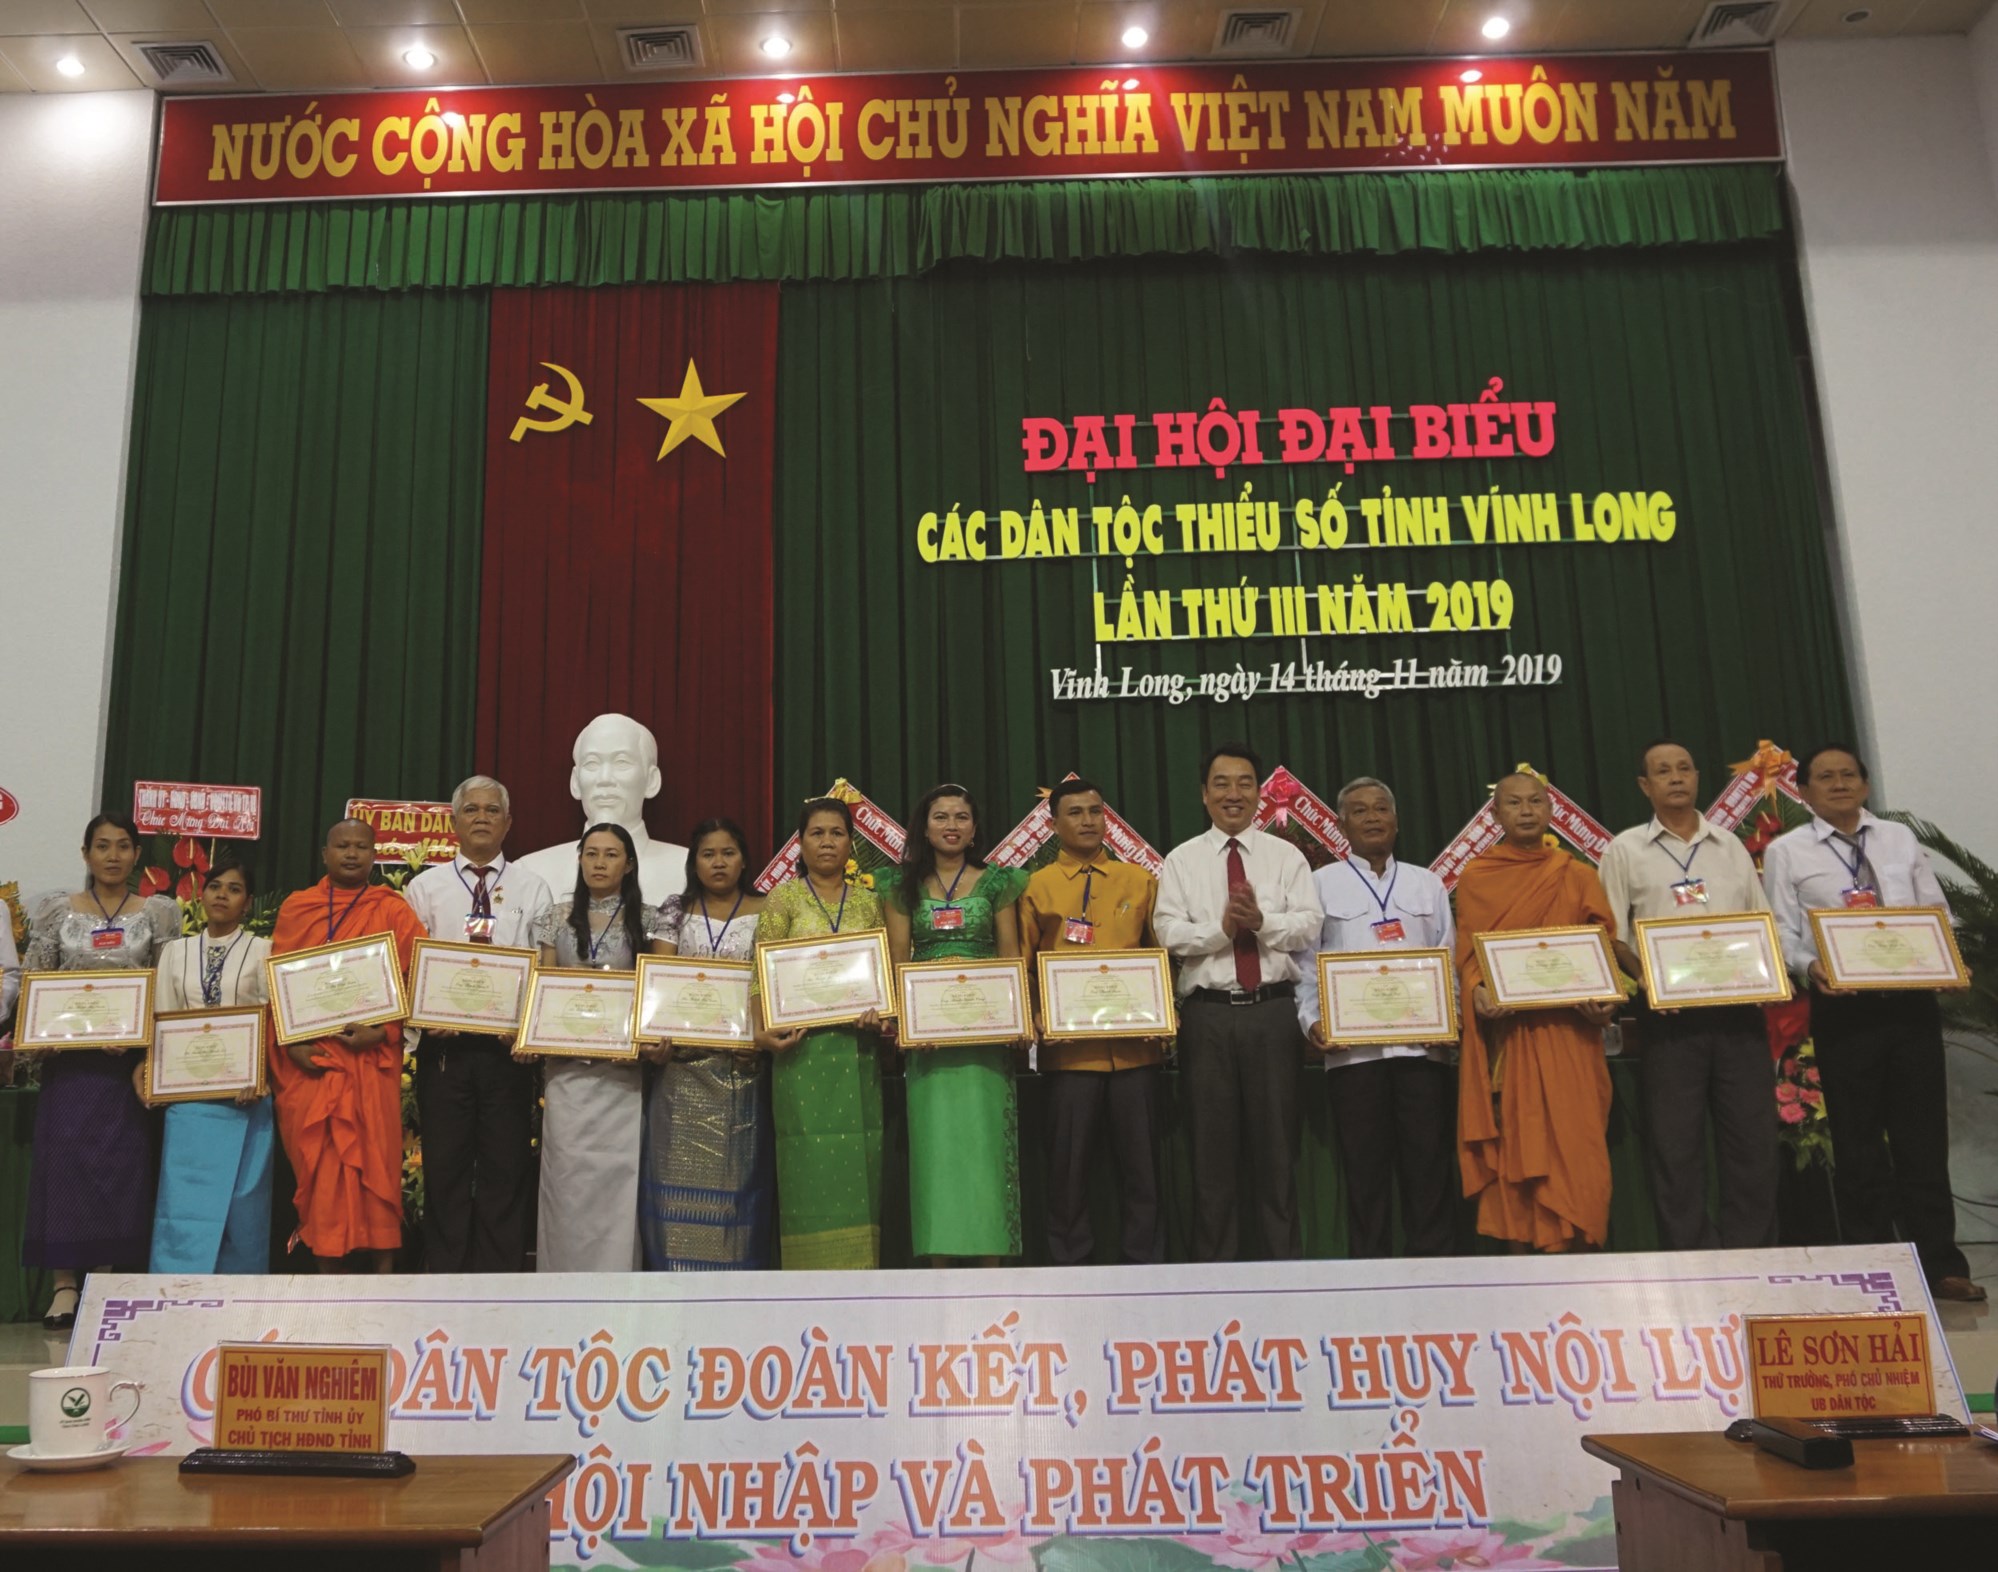 Ông Lữ Quang Ngời, Phó Chủ tịch UBND tỉnh Vĩnh Long trao Bằng khen của Chủ tịch UBND tỉnh cho các cá nhân